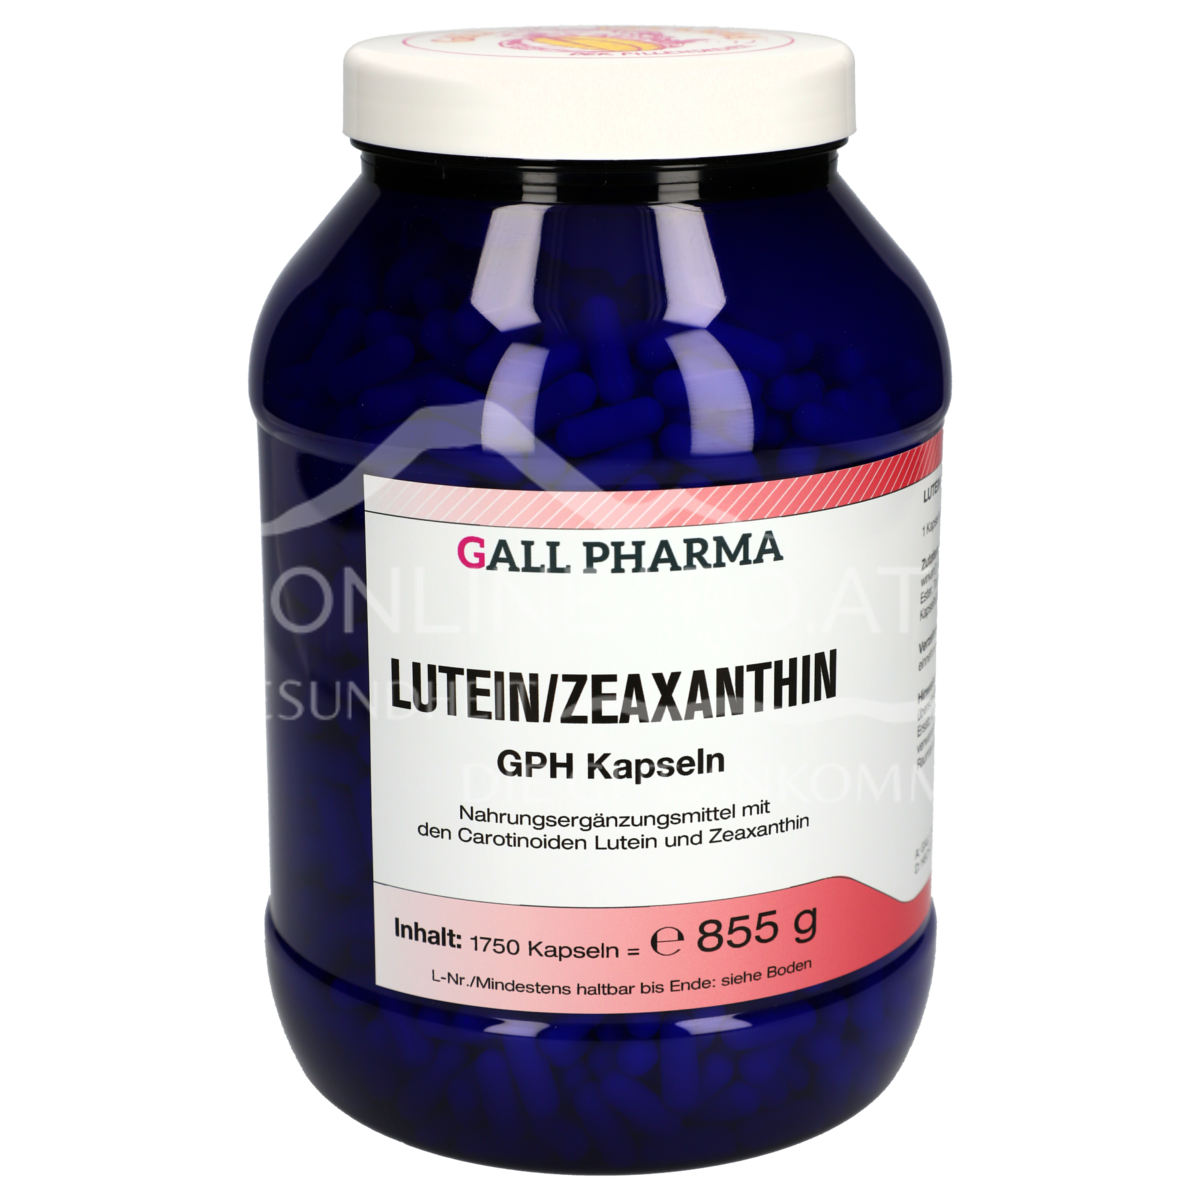 Gall Pharma Lutein/Zeaxanthin Kapseln